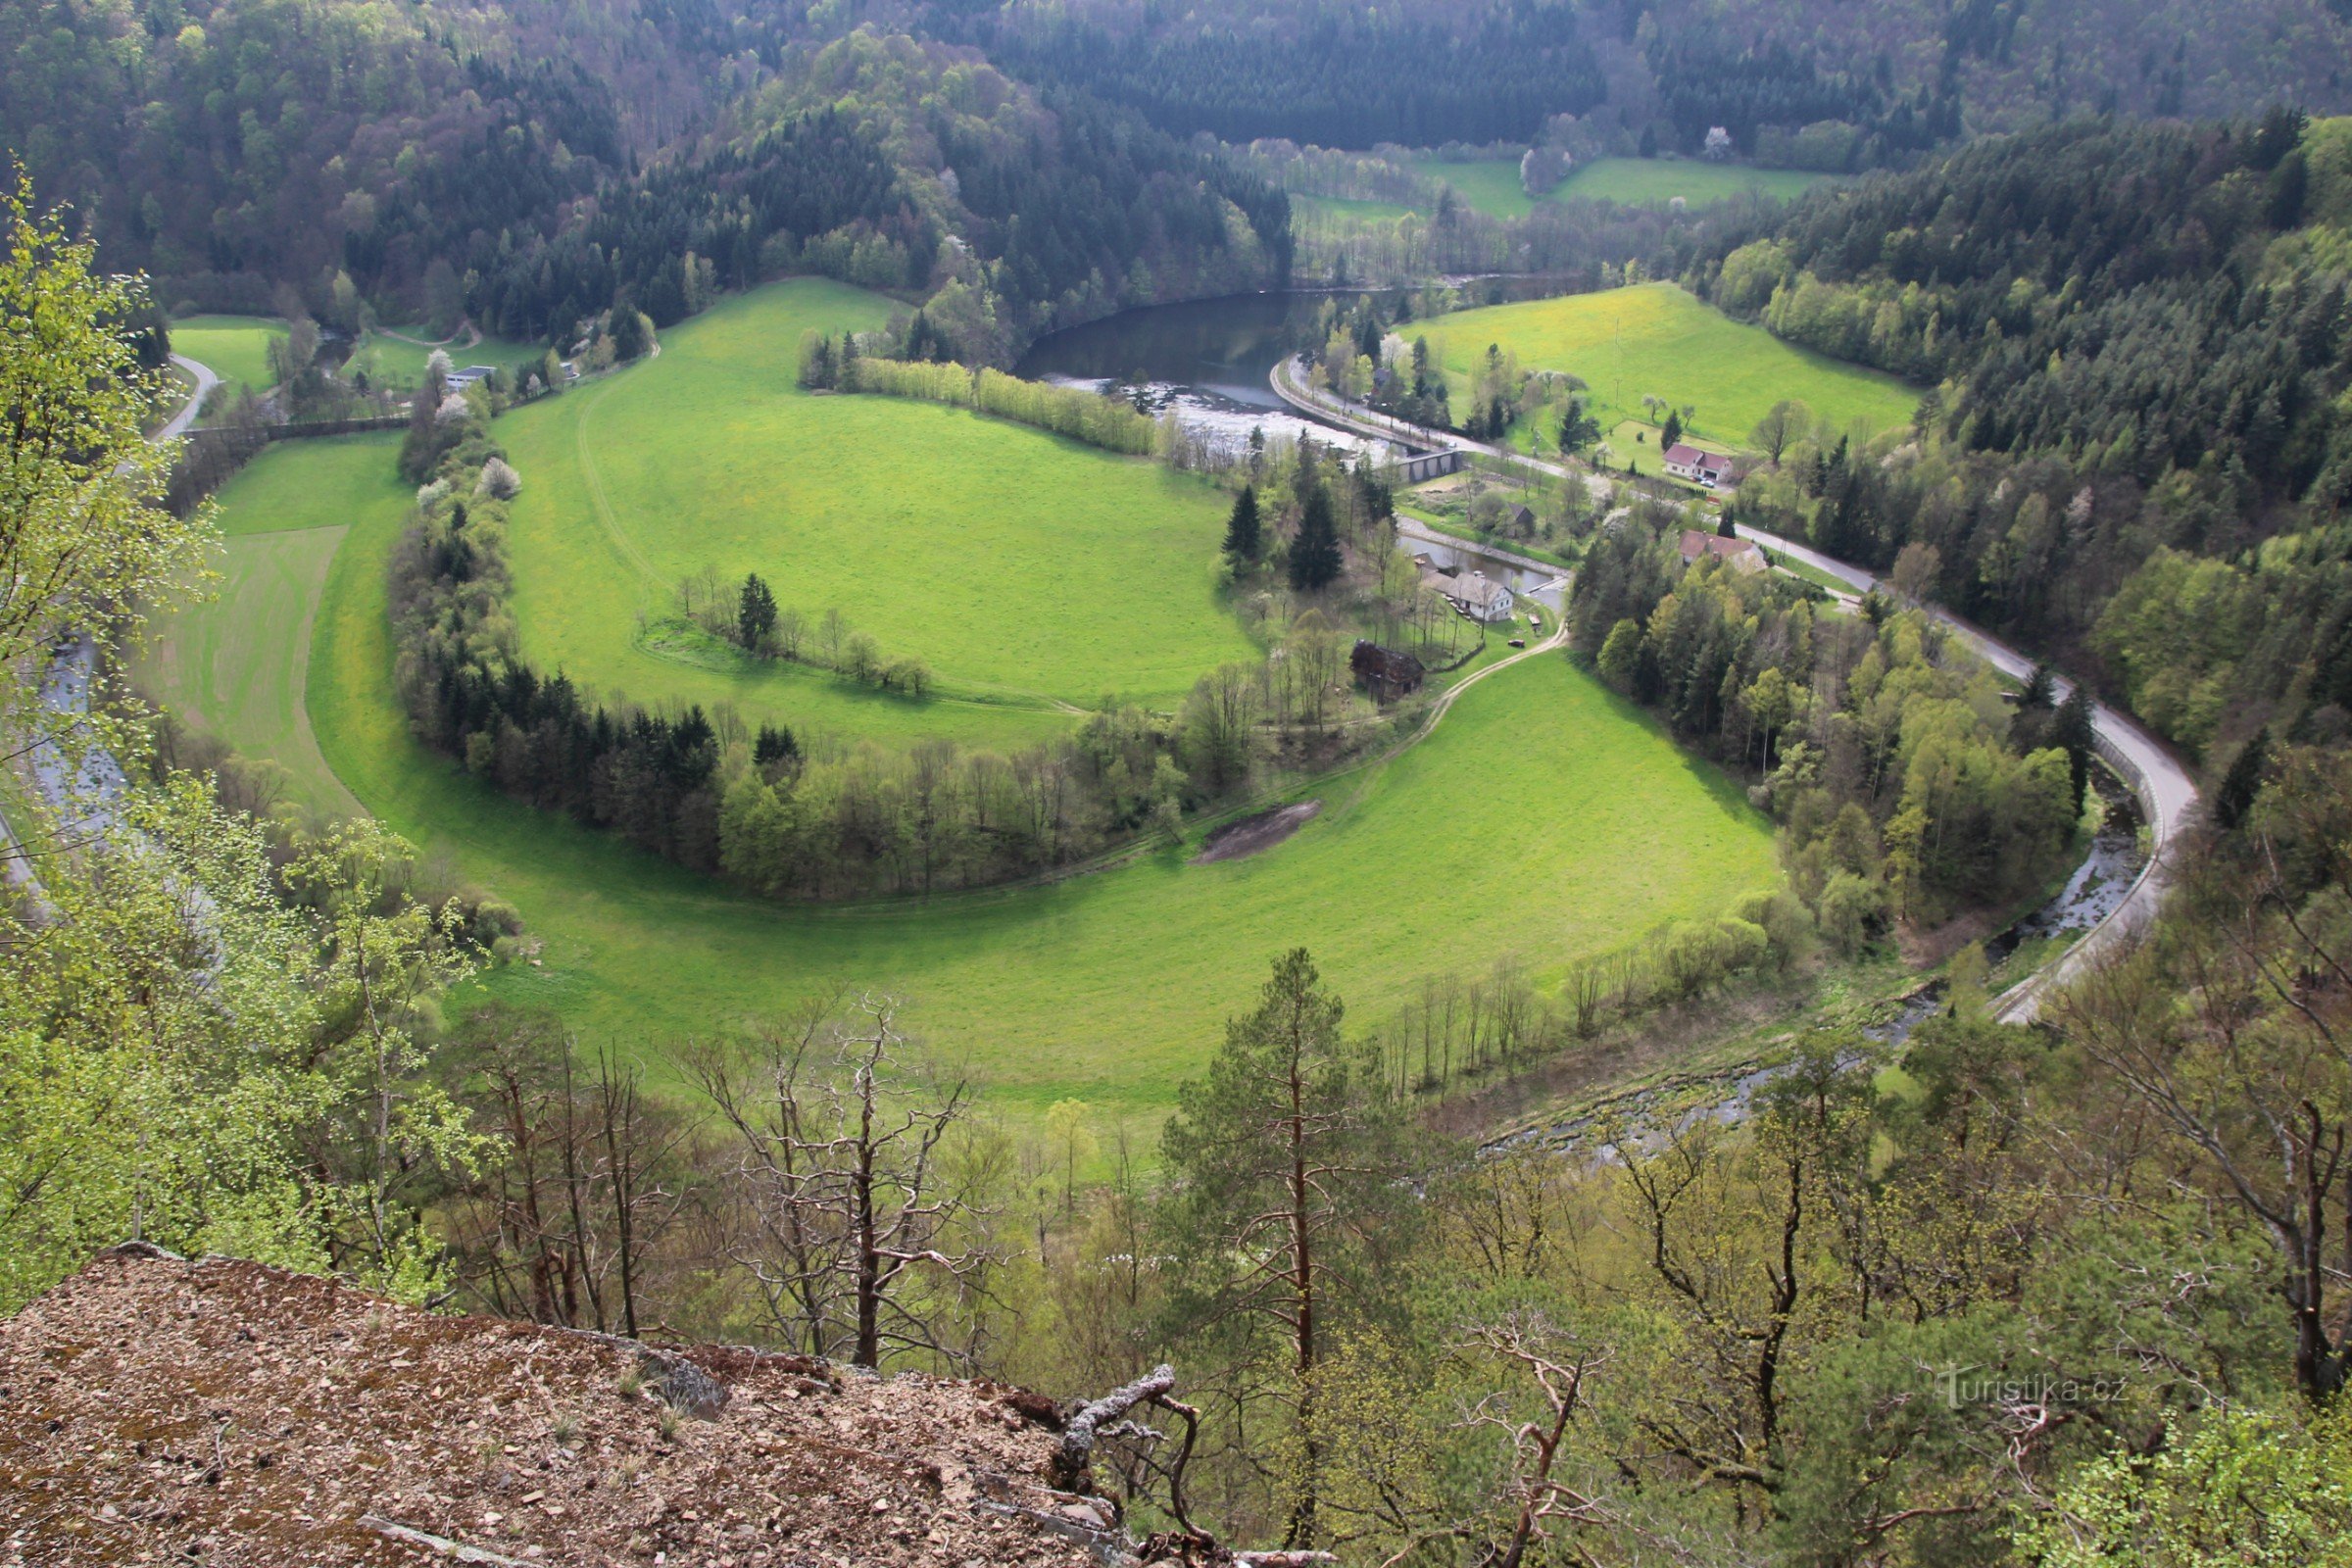 Pohled do údolí na široký meandr řeky Svratky, kterým prochází podzemní přivaděč